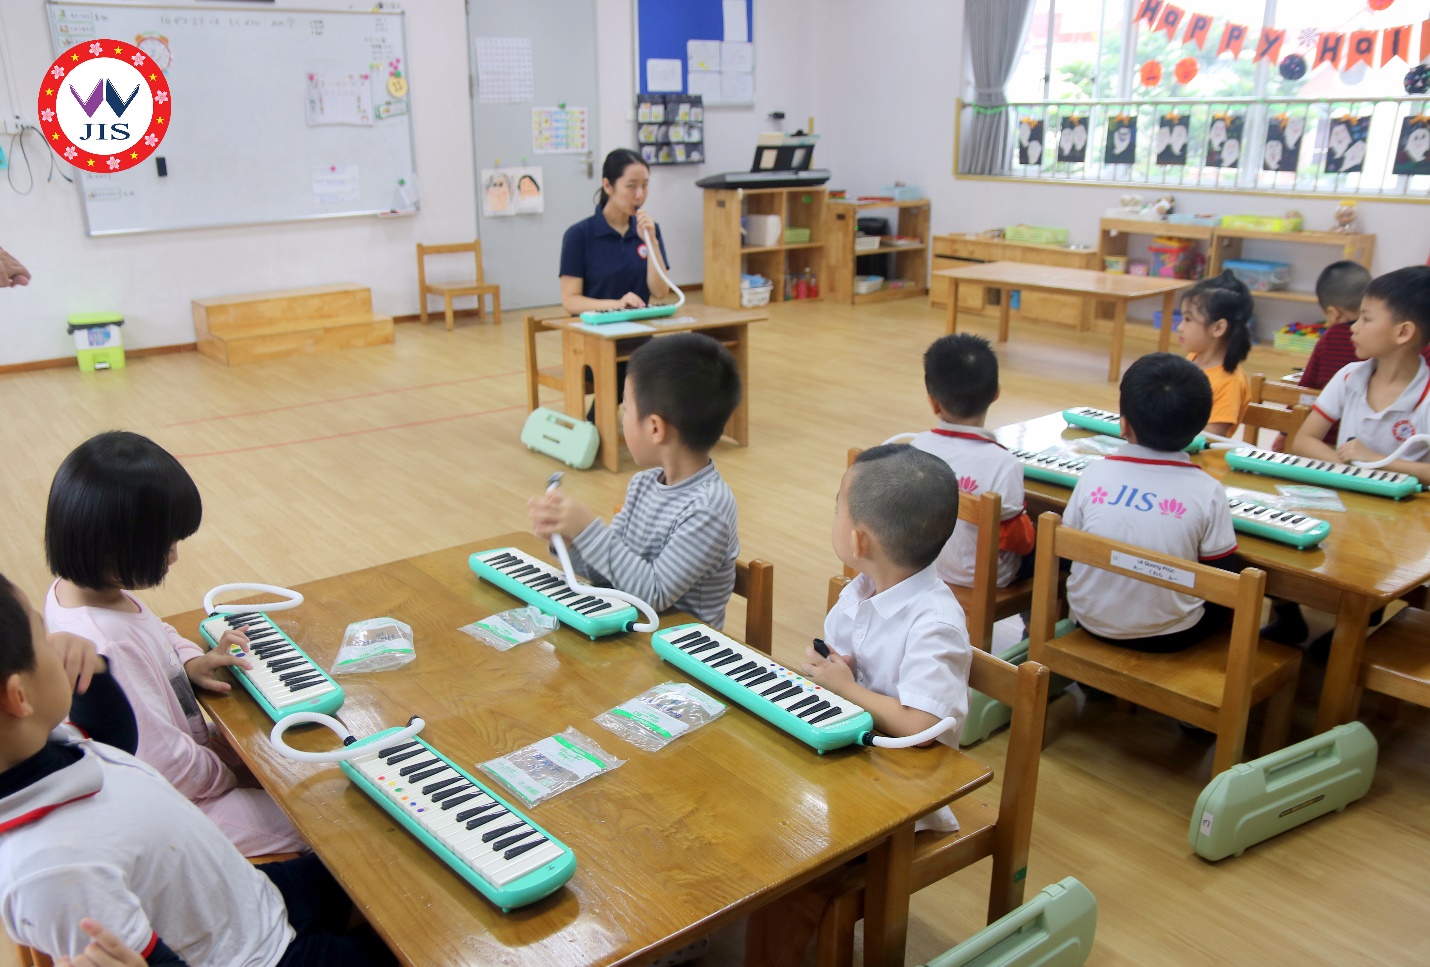 Ngôi trường Quốc tế đặc biệt ở Hà Nội: Không lớp trưởng, không “sao đỏ” nhưng học sinh luôn lễ phép và hạnh phúc - Ảnh 4.